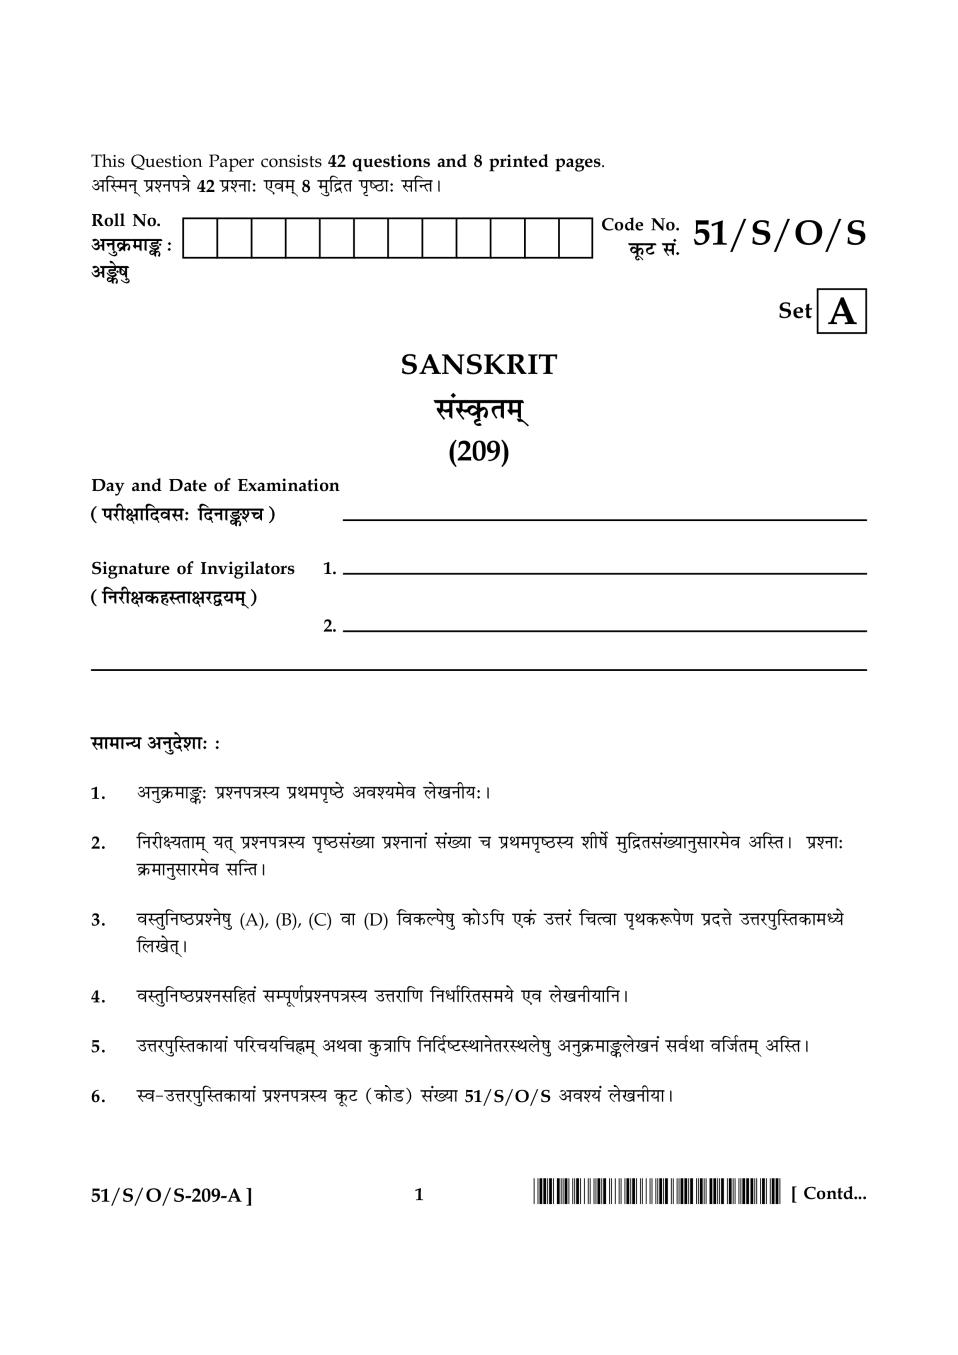 NIOS Class 10 Question Paper Oct 2015 - Sanskrit - Page 1